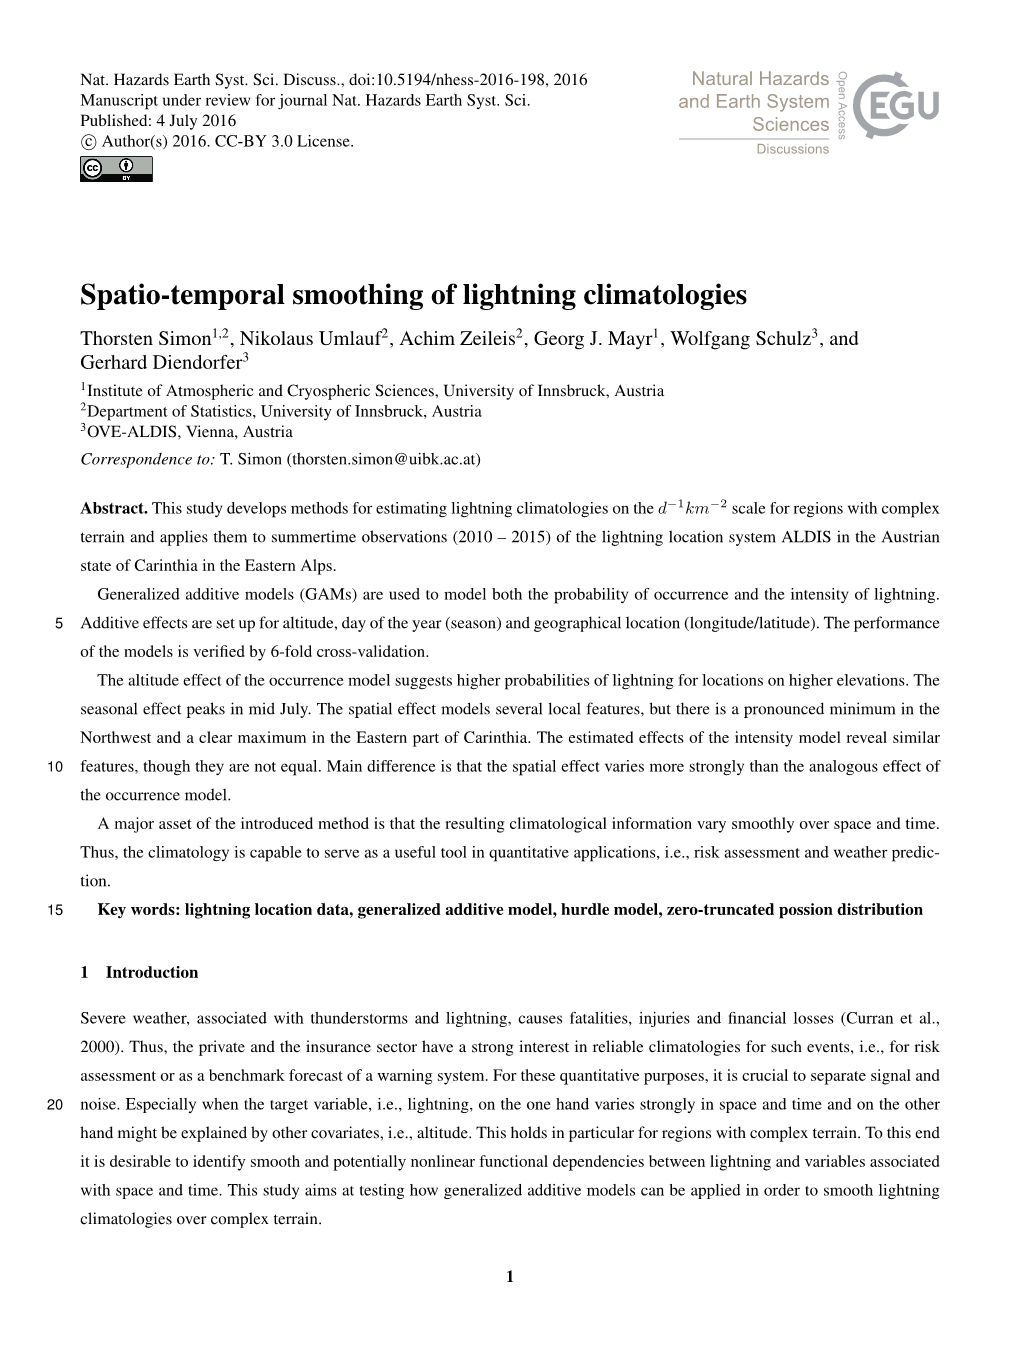 Spatio-Temporal Smoothing of Lightning Climatologies Thorsten Simon1,2, Nikolaus Umlauf2, Achim Zeileis2, Georg J